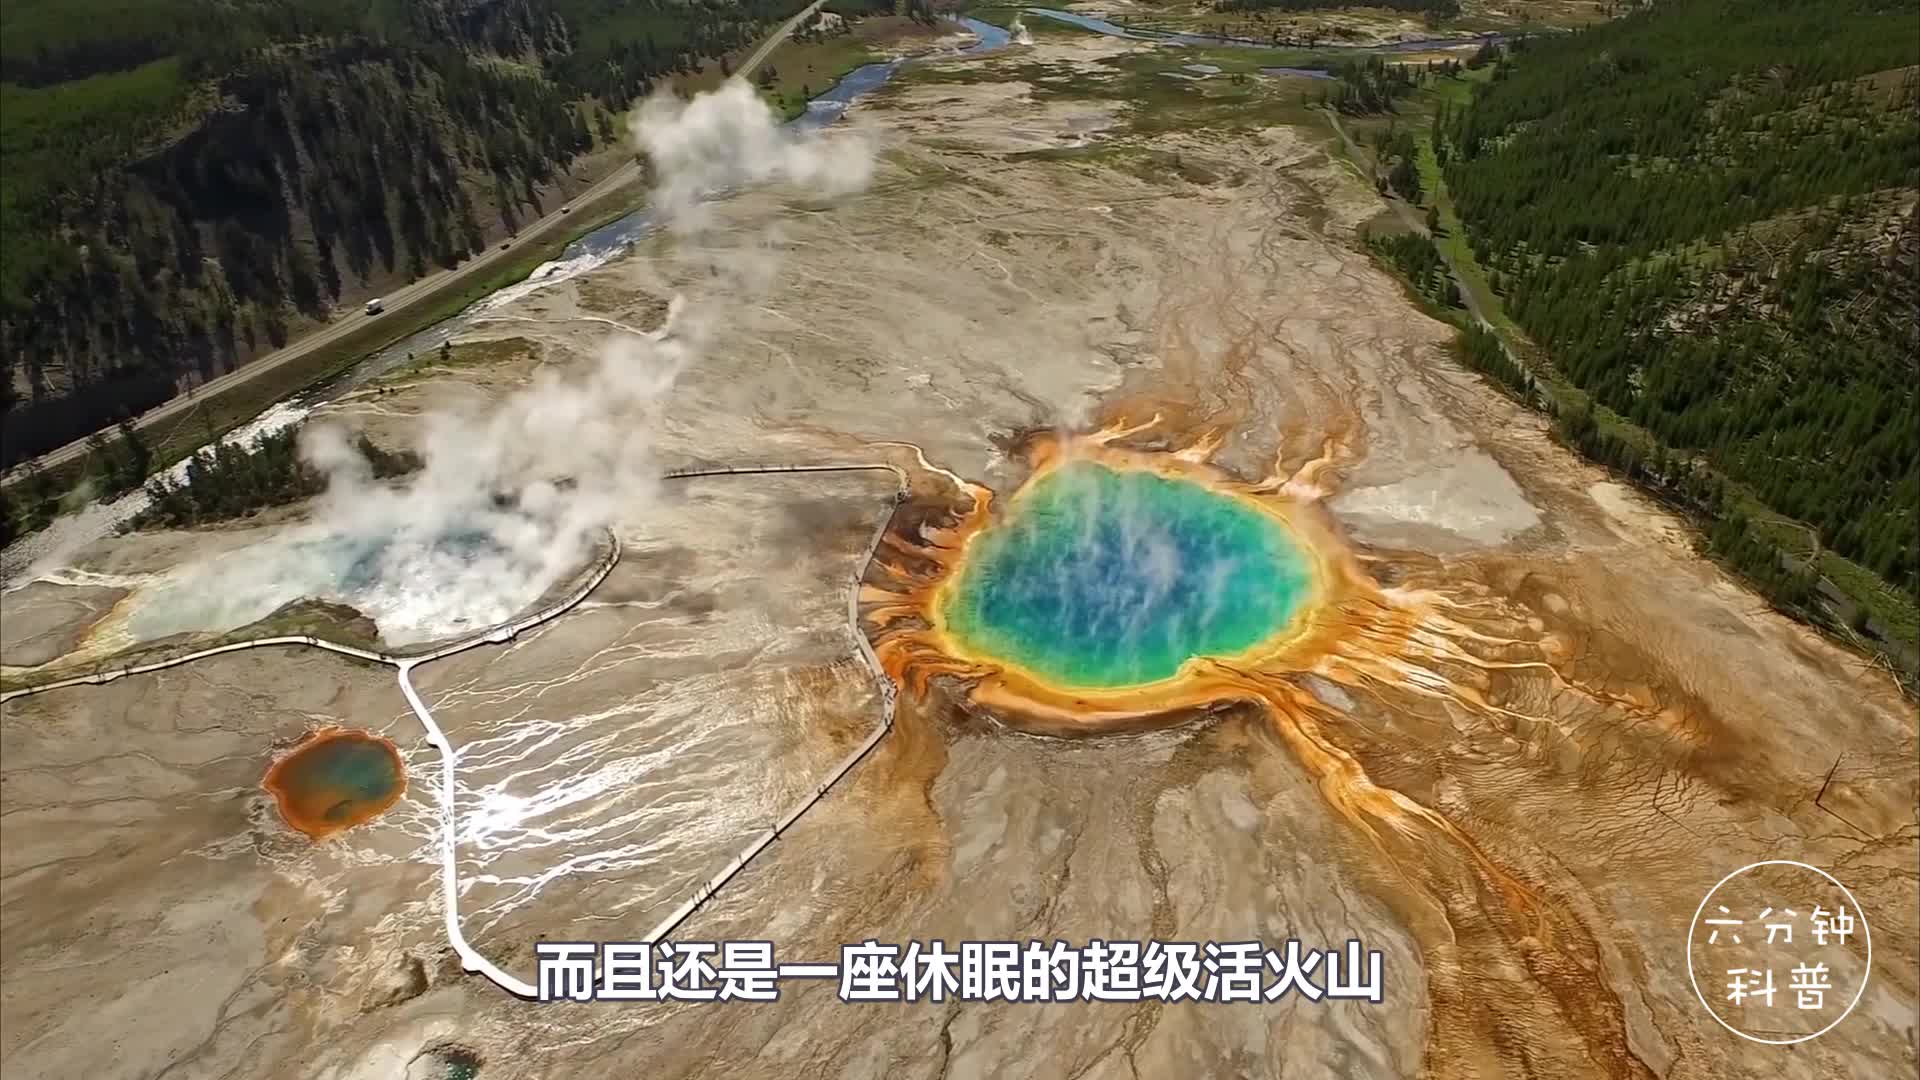 如果美国黄石公园超级火山爆发,会有什么后果?